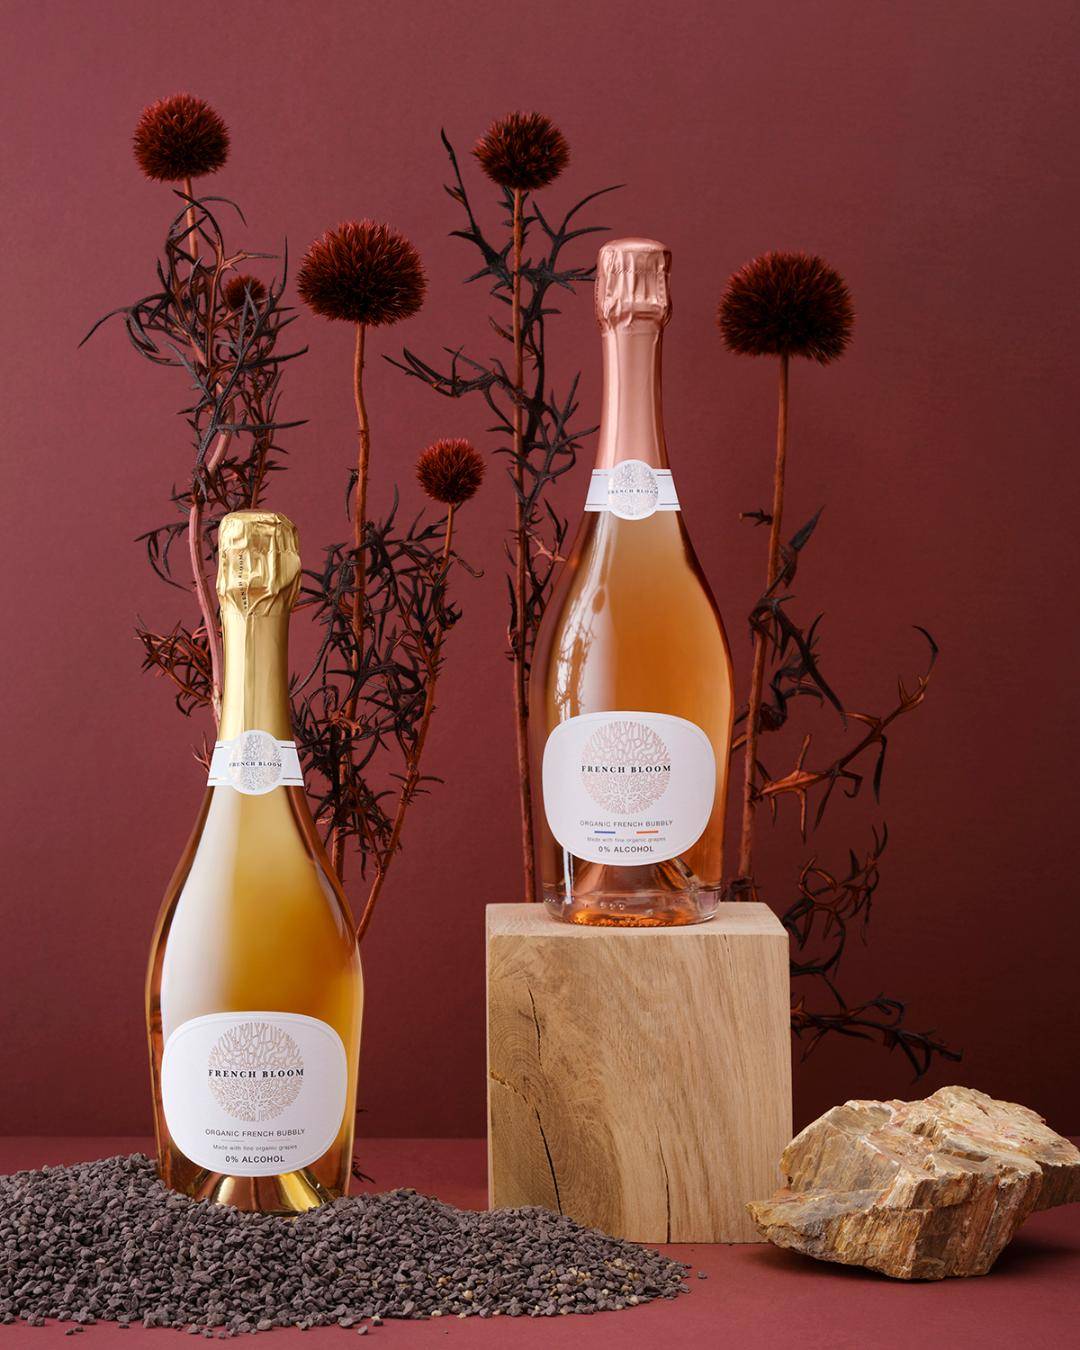 Avec son vin pétillant, bio et sans alcool, French Bloom révolutionne l'apéro